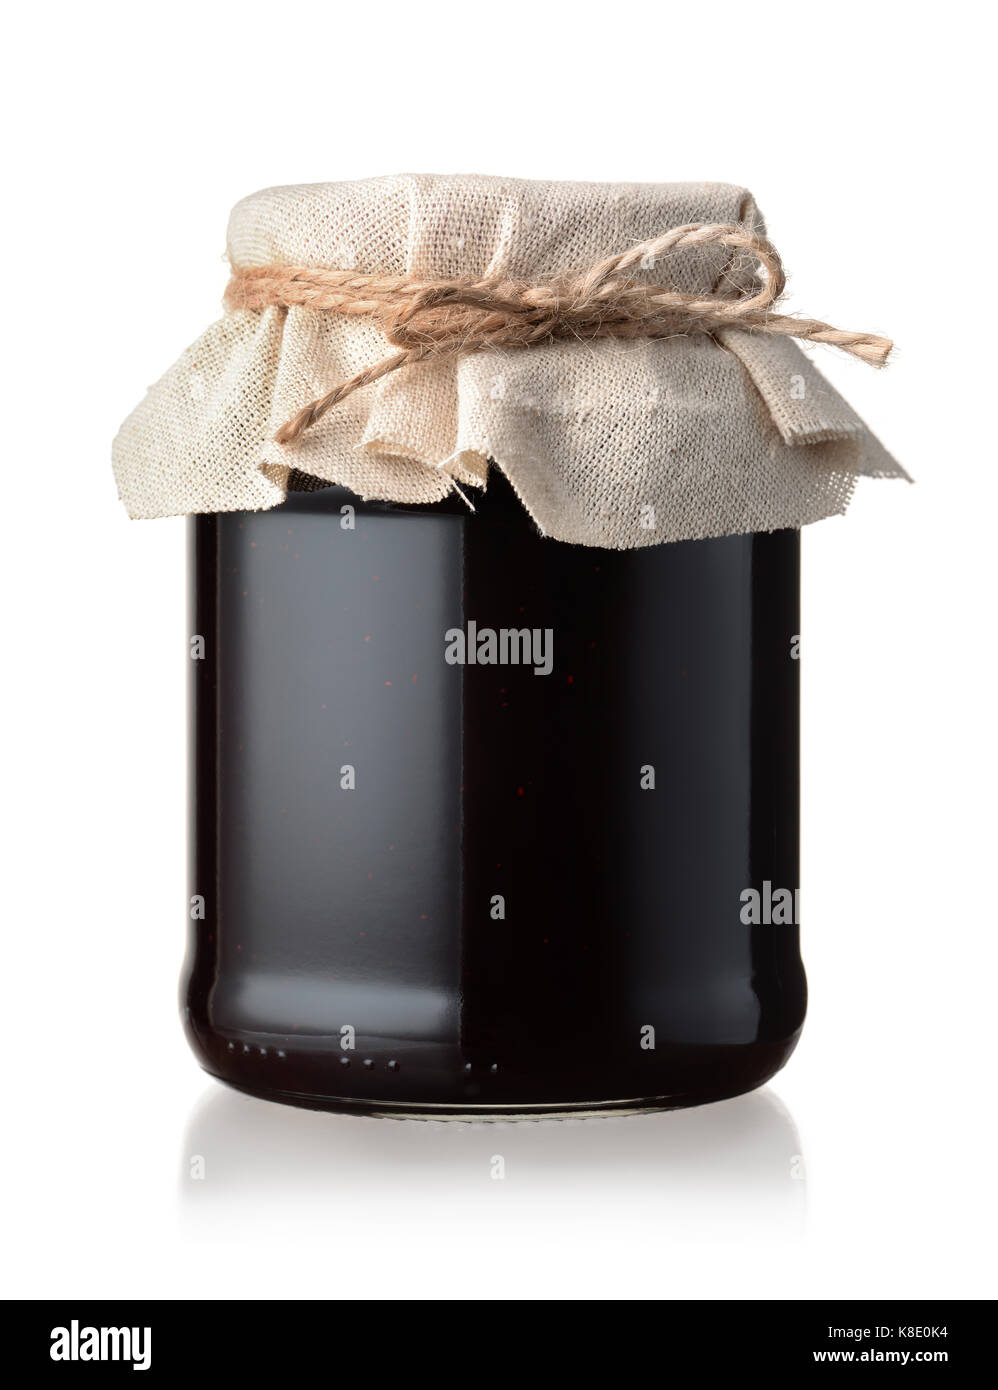 Jar of homemade blackberry jam isolated on white Stock Photo